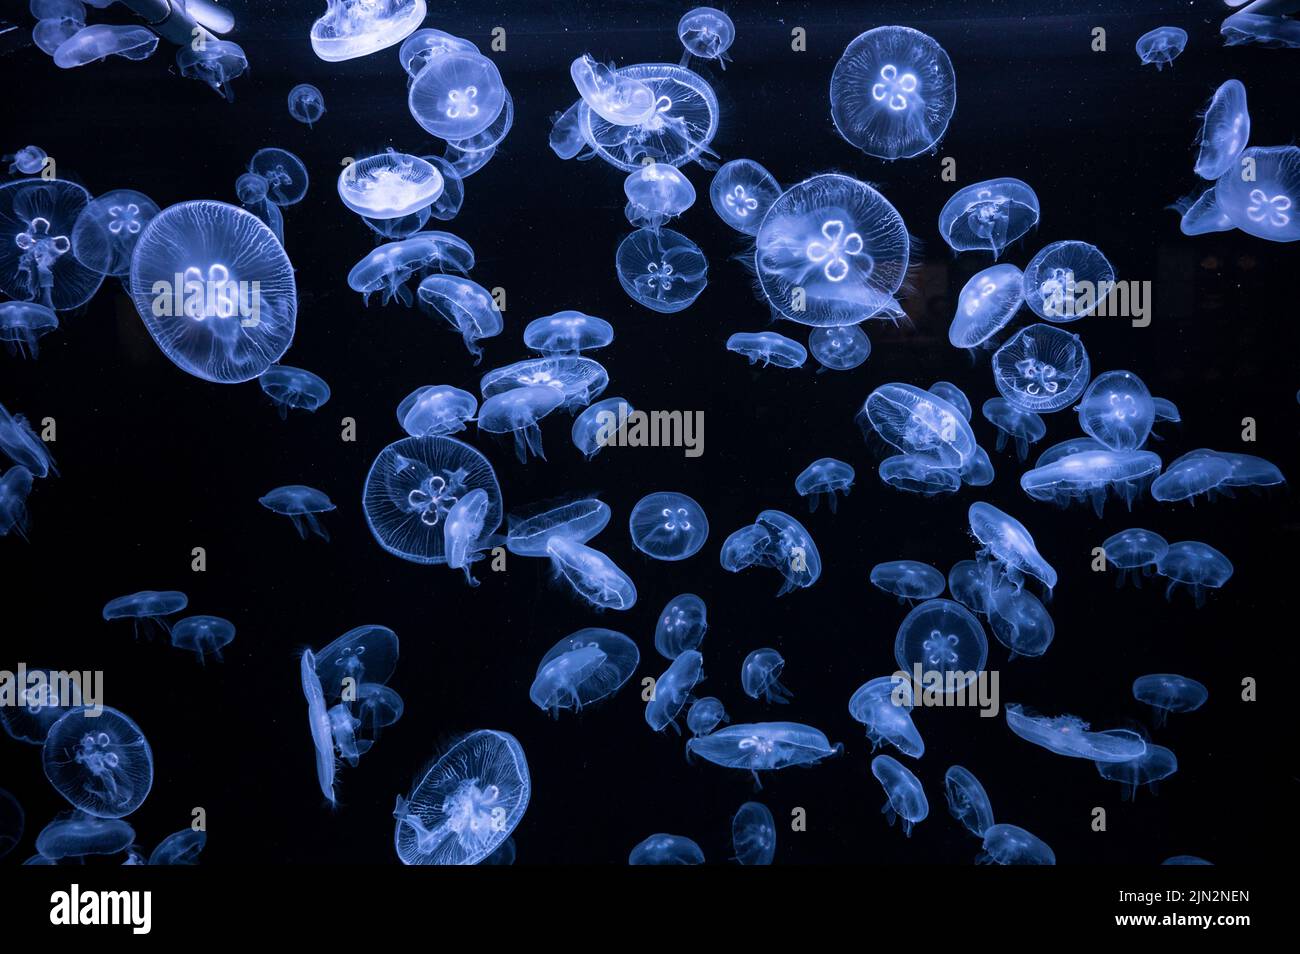 Many Moon Jellyfish (Aurelia aurita) are seen swimming underwater Stock Photo